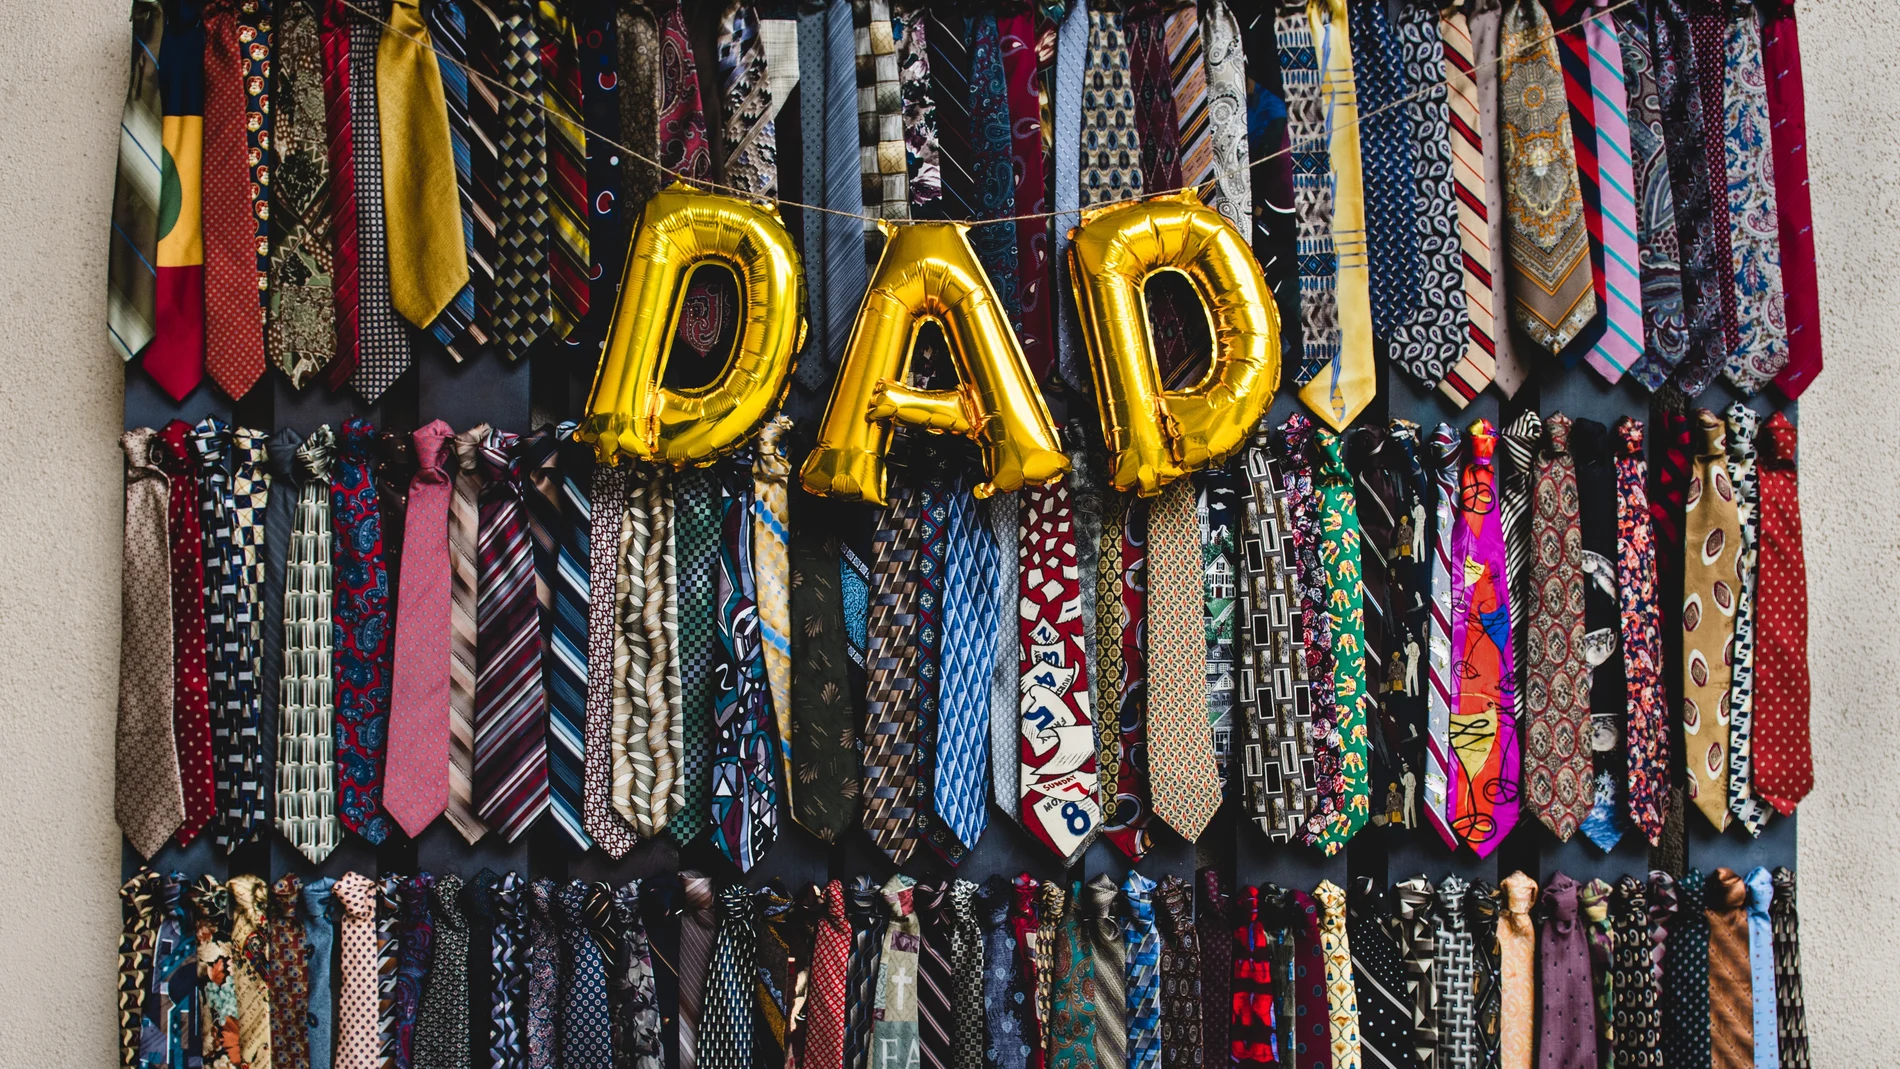 ¿Por qué el Día del Padre hacemos regalos... como corbatas?